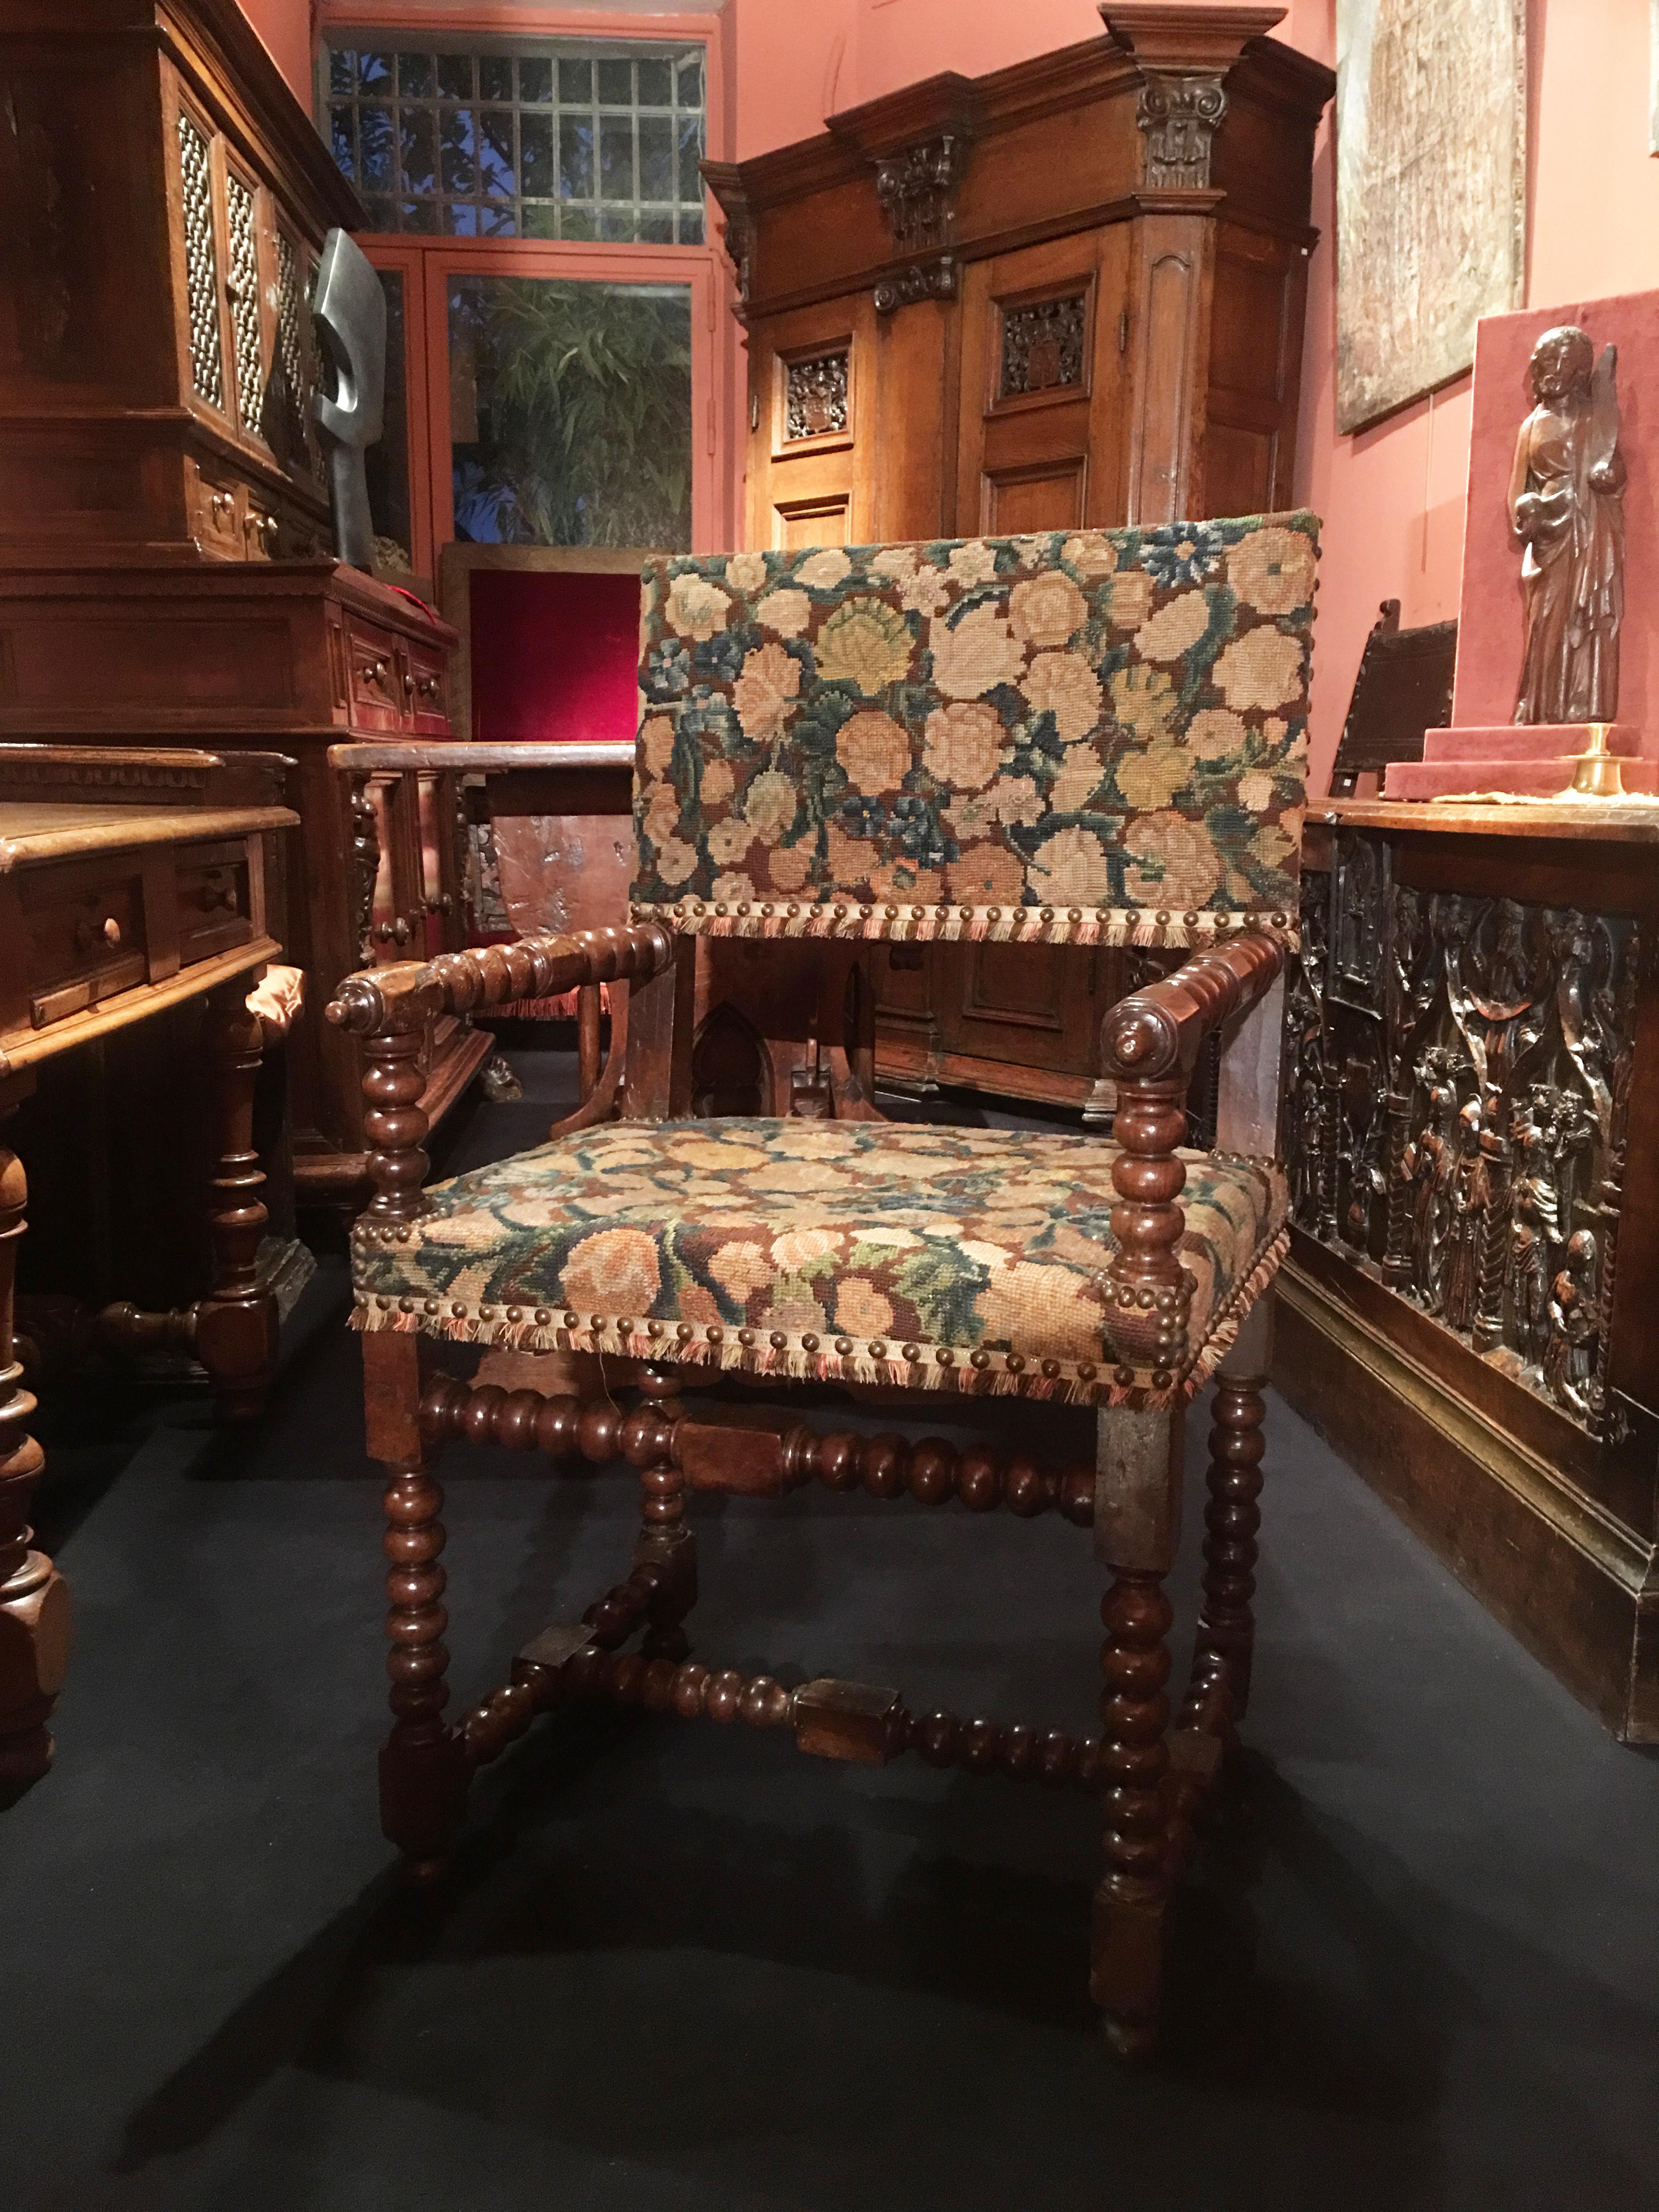 In der ersten Hälfte des siebzehnten Jahrhunderts entwickelt sich der Stuhl zu einem neuen Modell, das heute als Louis XIII bekannt ist und den Sessel vorwegnimmt. Die Stühle haben eine breitere und niedrigere Silhouette. Es herrschen horizontale